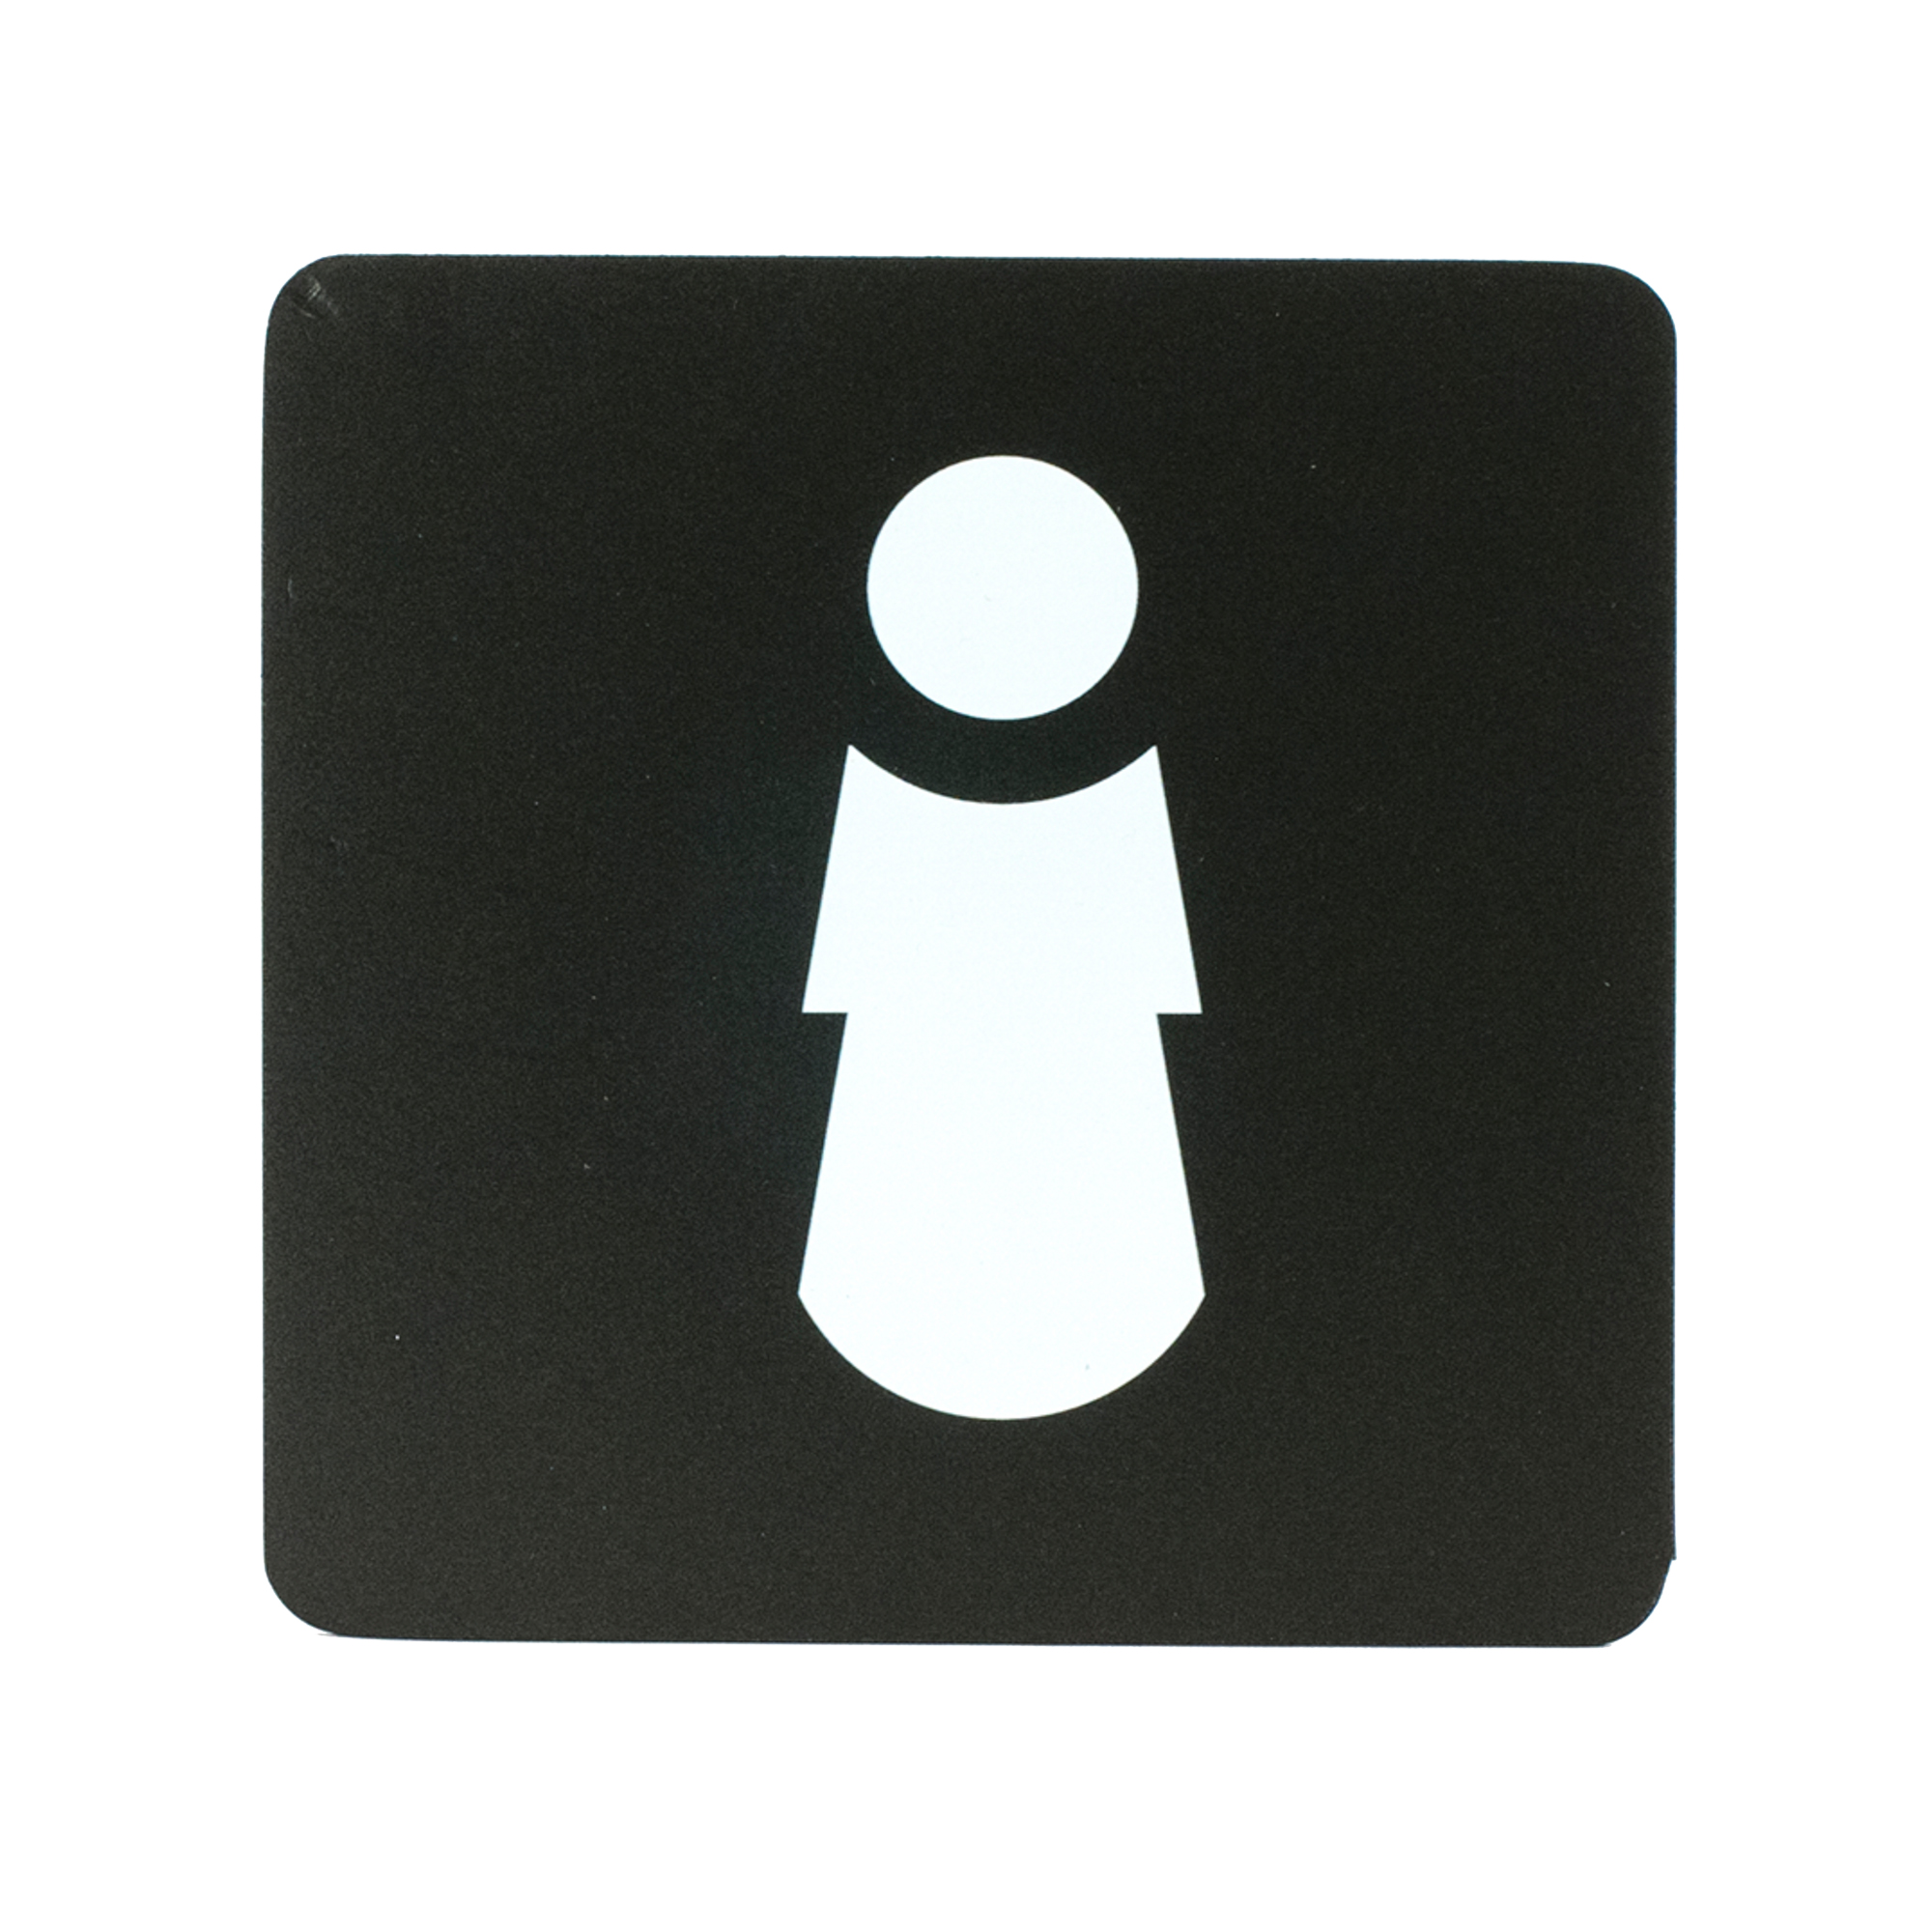 Pittogramma adesivo - toilette donna - 16 x 16 cm - PVC - nero/bianco - Stilcasa